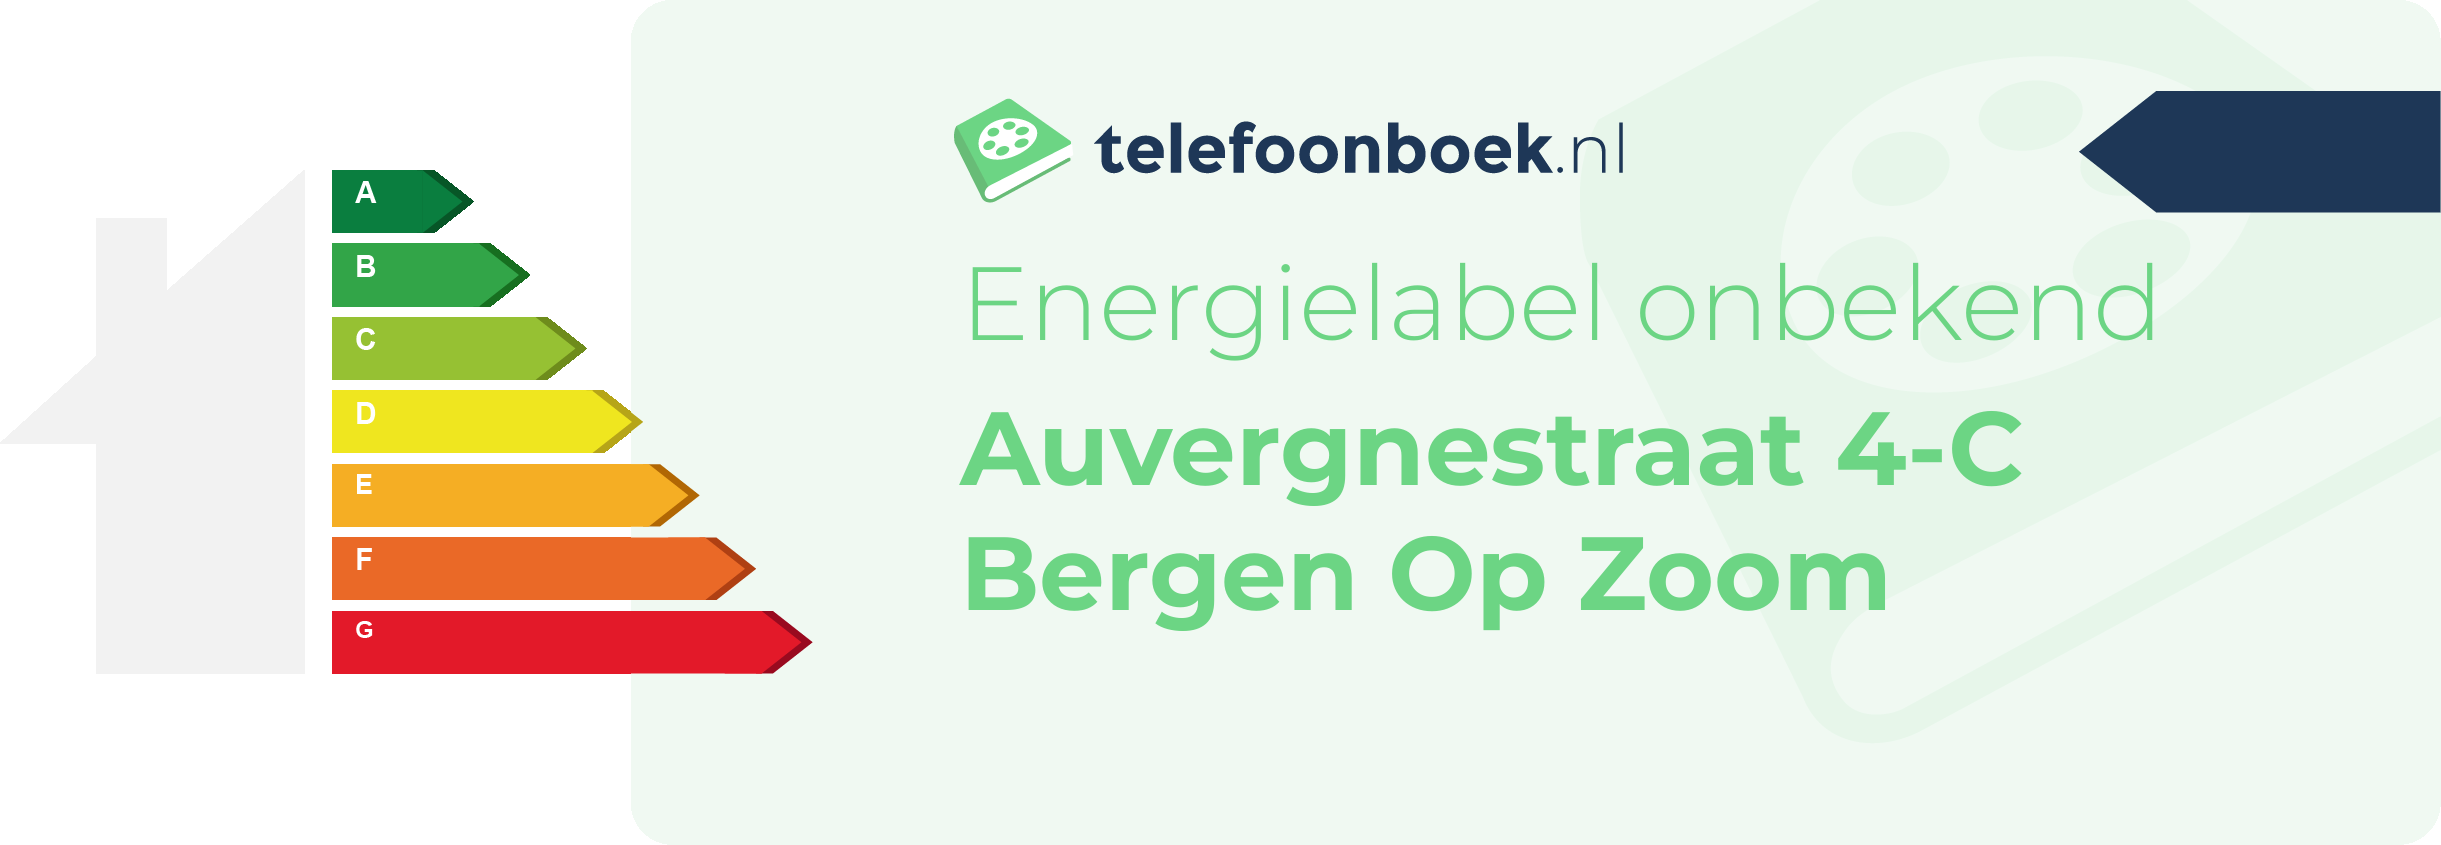 Energielabel Auvergnestraat 4-C Bergen Op Zoom